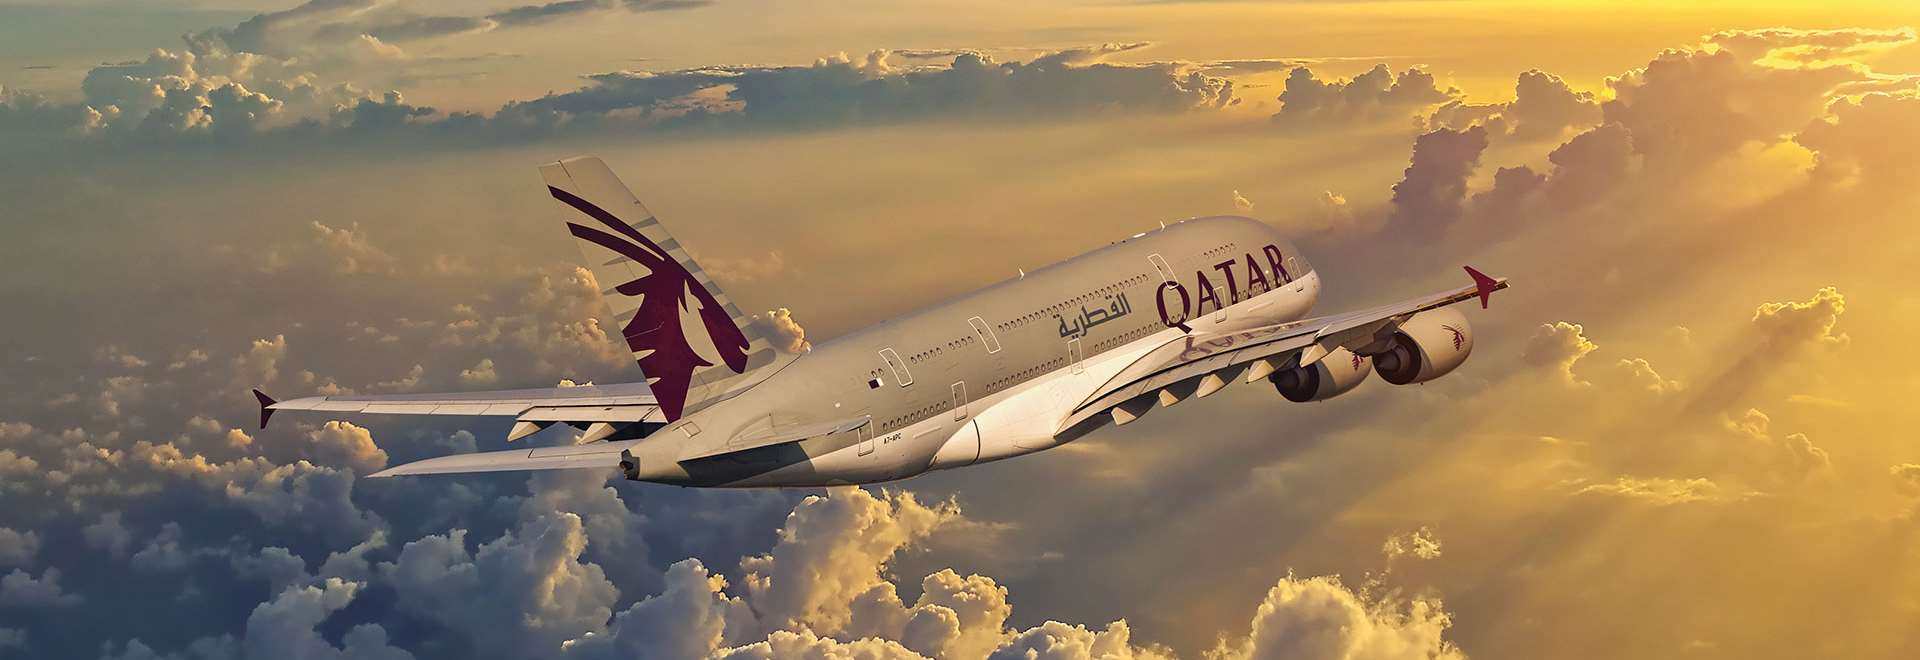 Qatar airways customer service usa